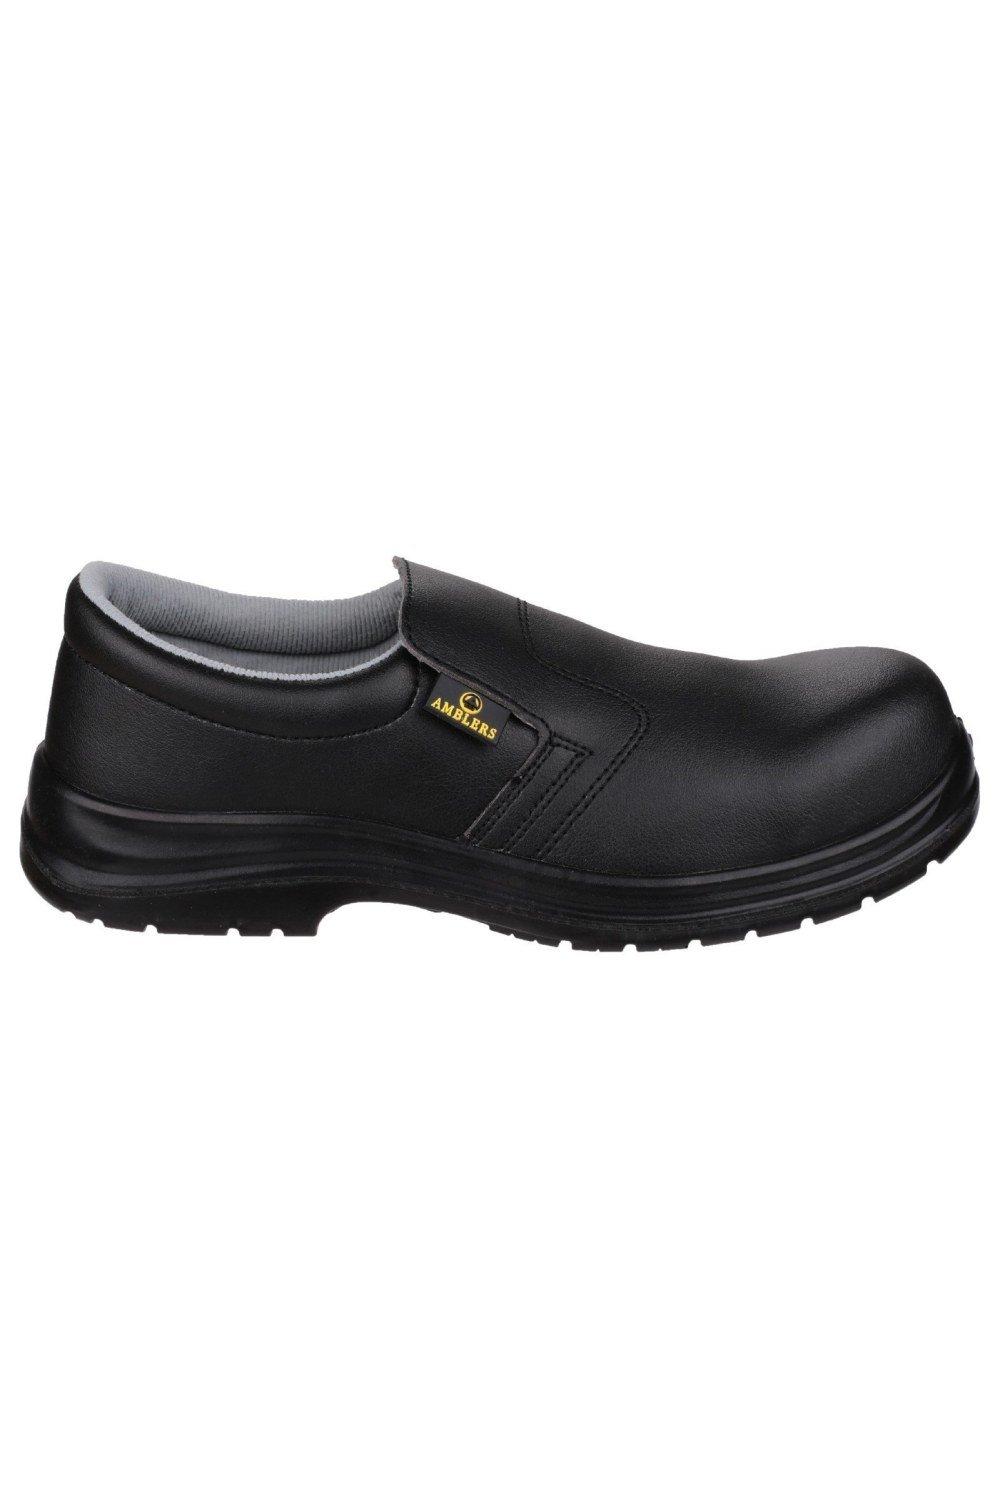 Safety FS661 Slip On Safety Shoes